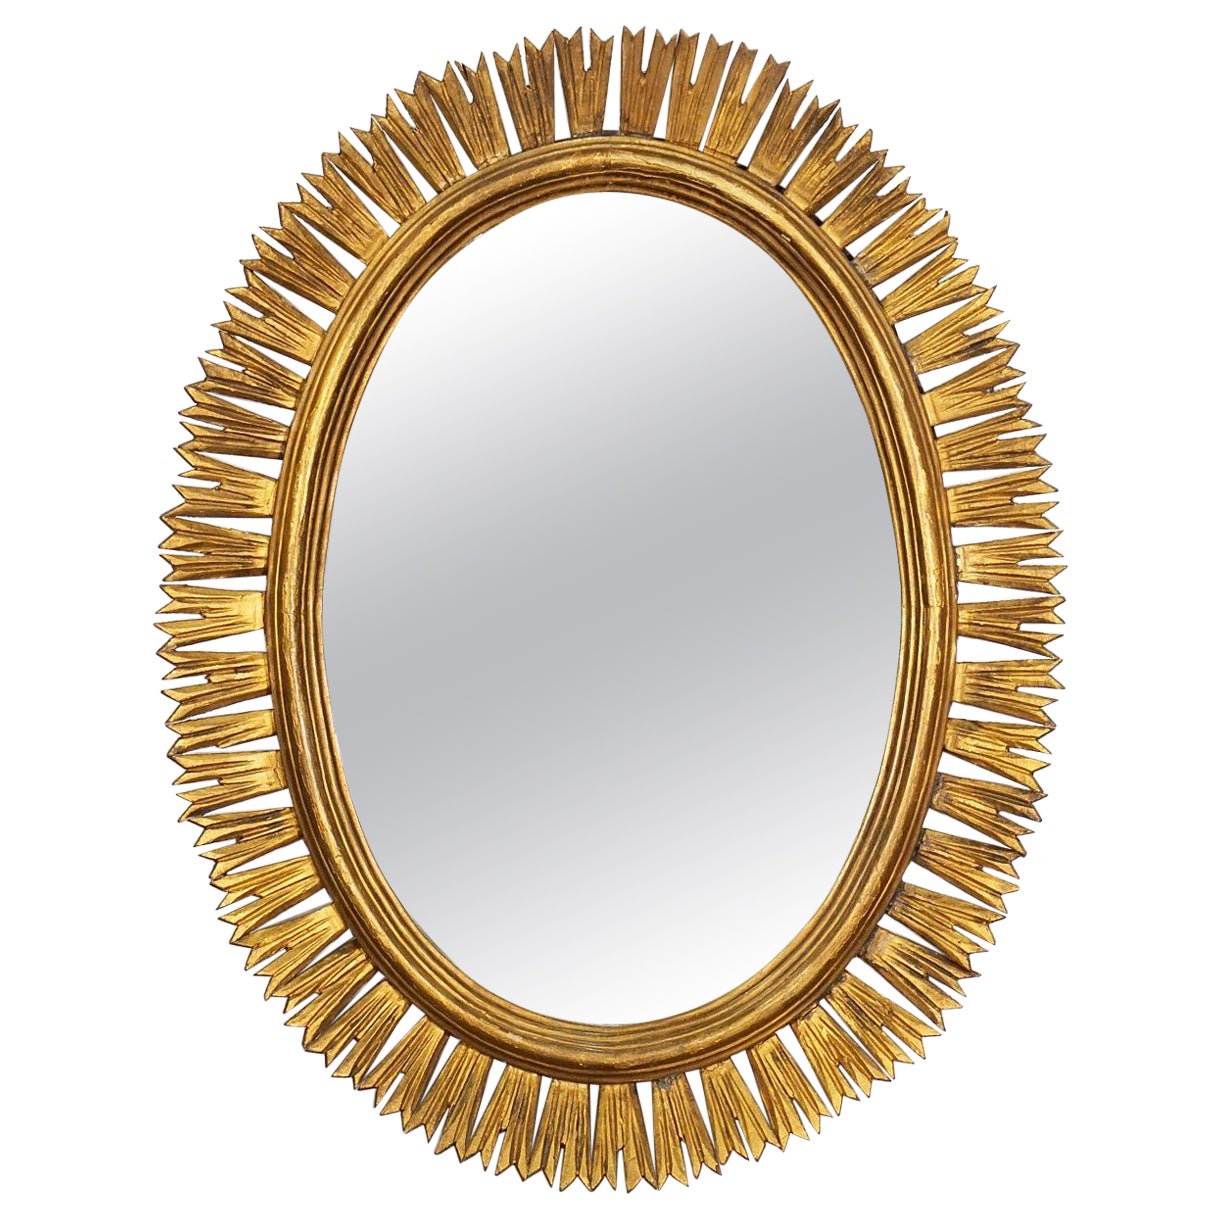 Spanish Gilt Oval Starburst or Sunburst Mirror (H 31 1/2 x W 24 1/2)